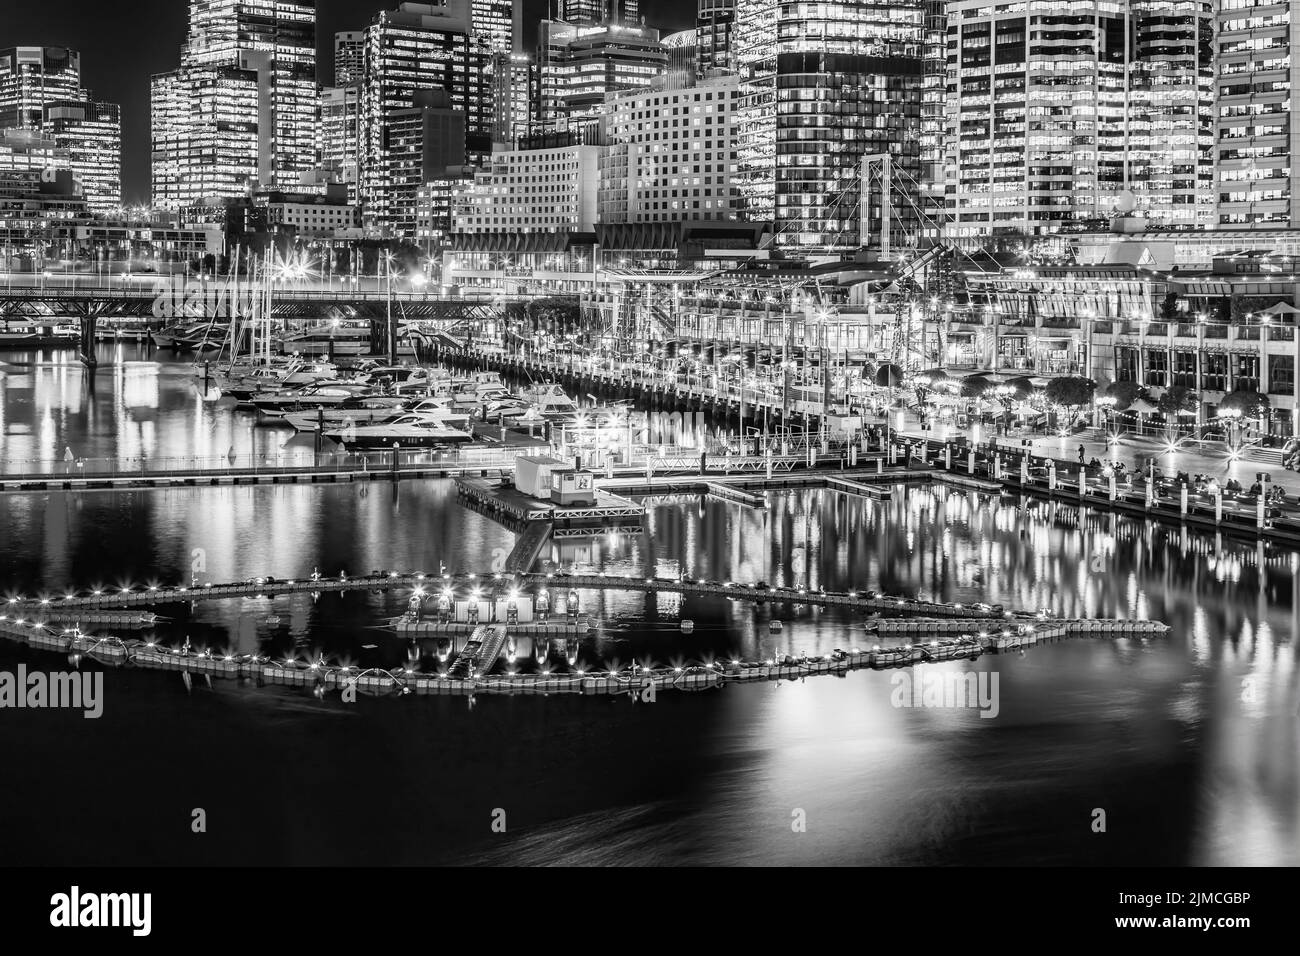 Vista panorámica del puerto Darling Harbour de alto contraste negro blanco en el distrito central de negocios de la ciudad de sídney al atardecer con una fuente de agua flotando en la bahía Coodle. Foto de stock